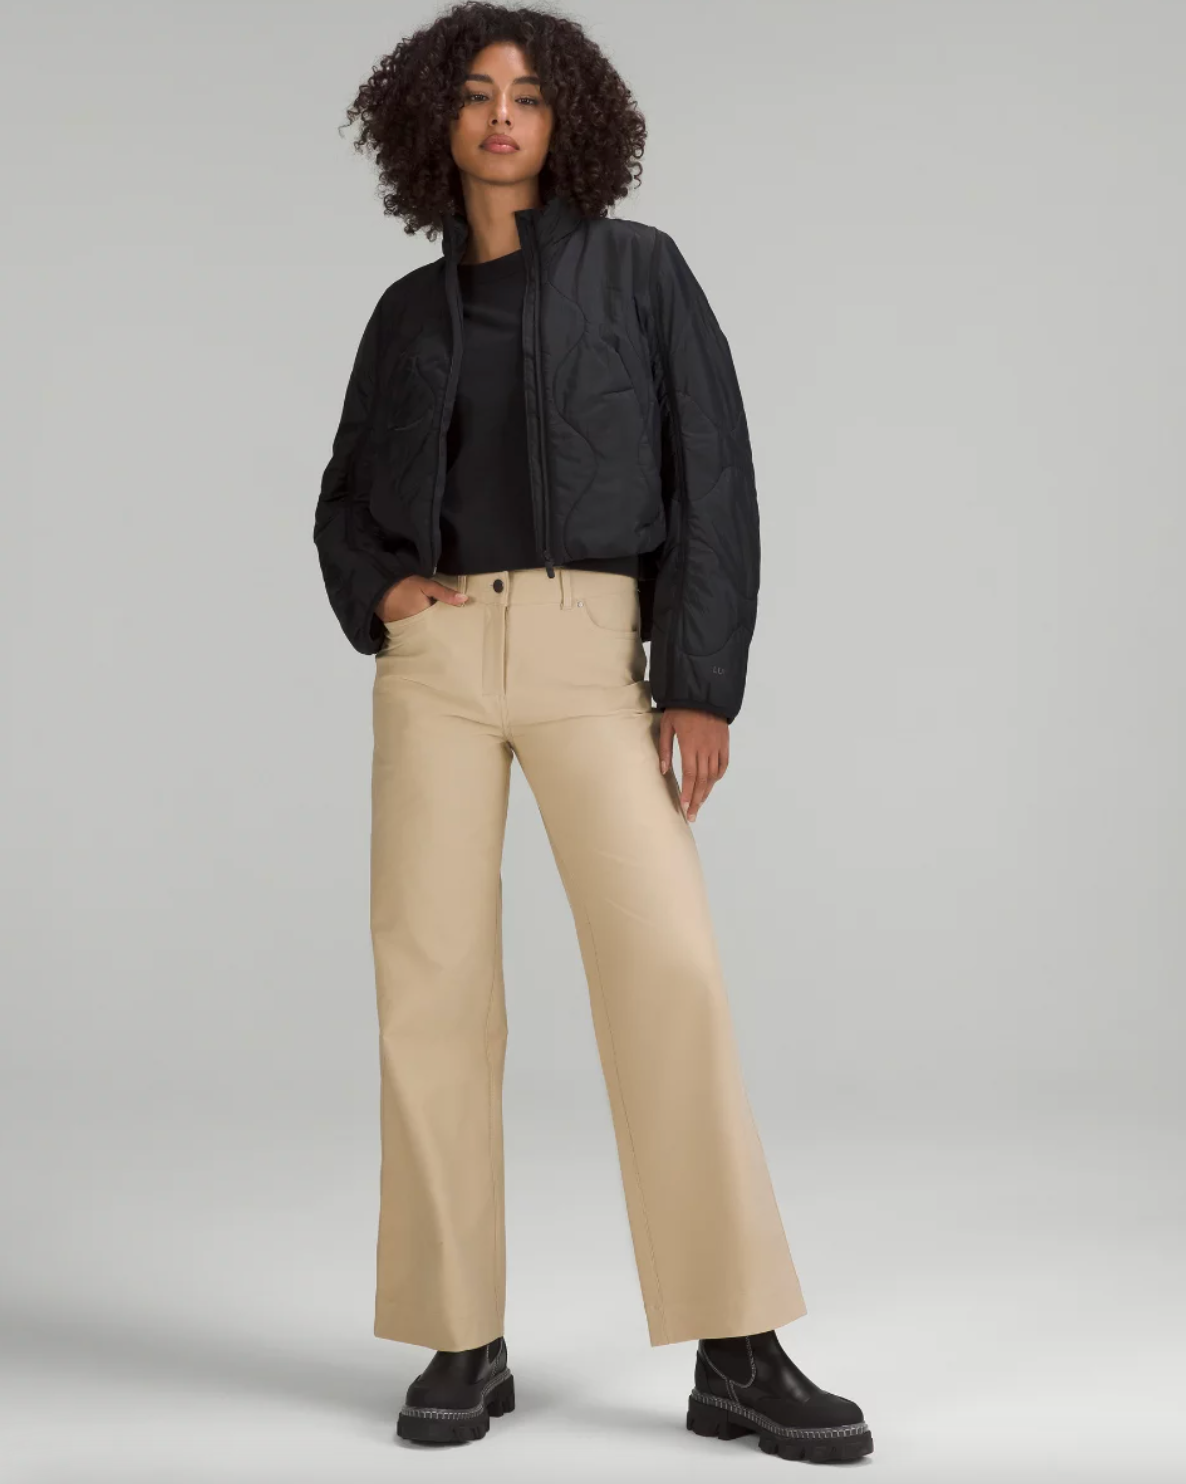  Lululemon City Sleek 5 Pockets Wide Leg : Clothing